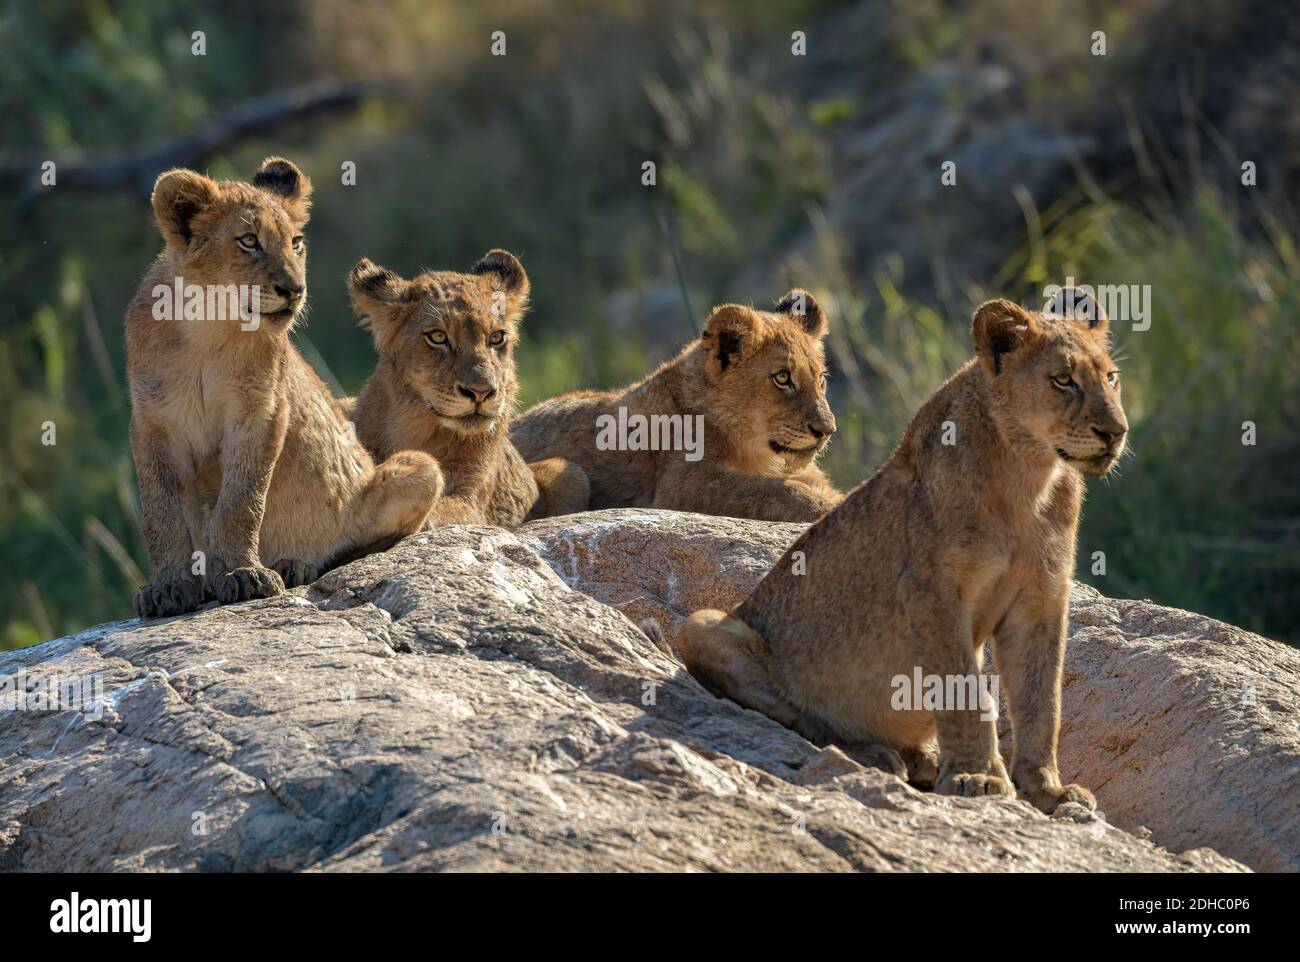 Cuatro cachorros de león alerta encaramado en una roca mirando a la derecha Foto de stock